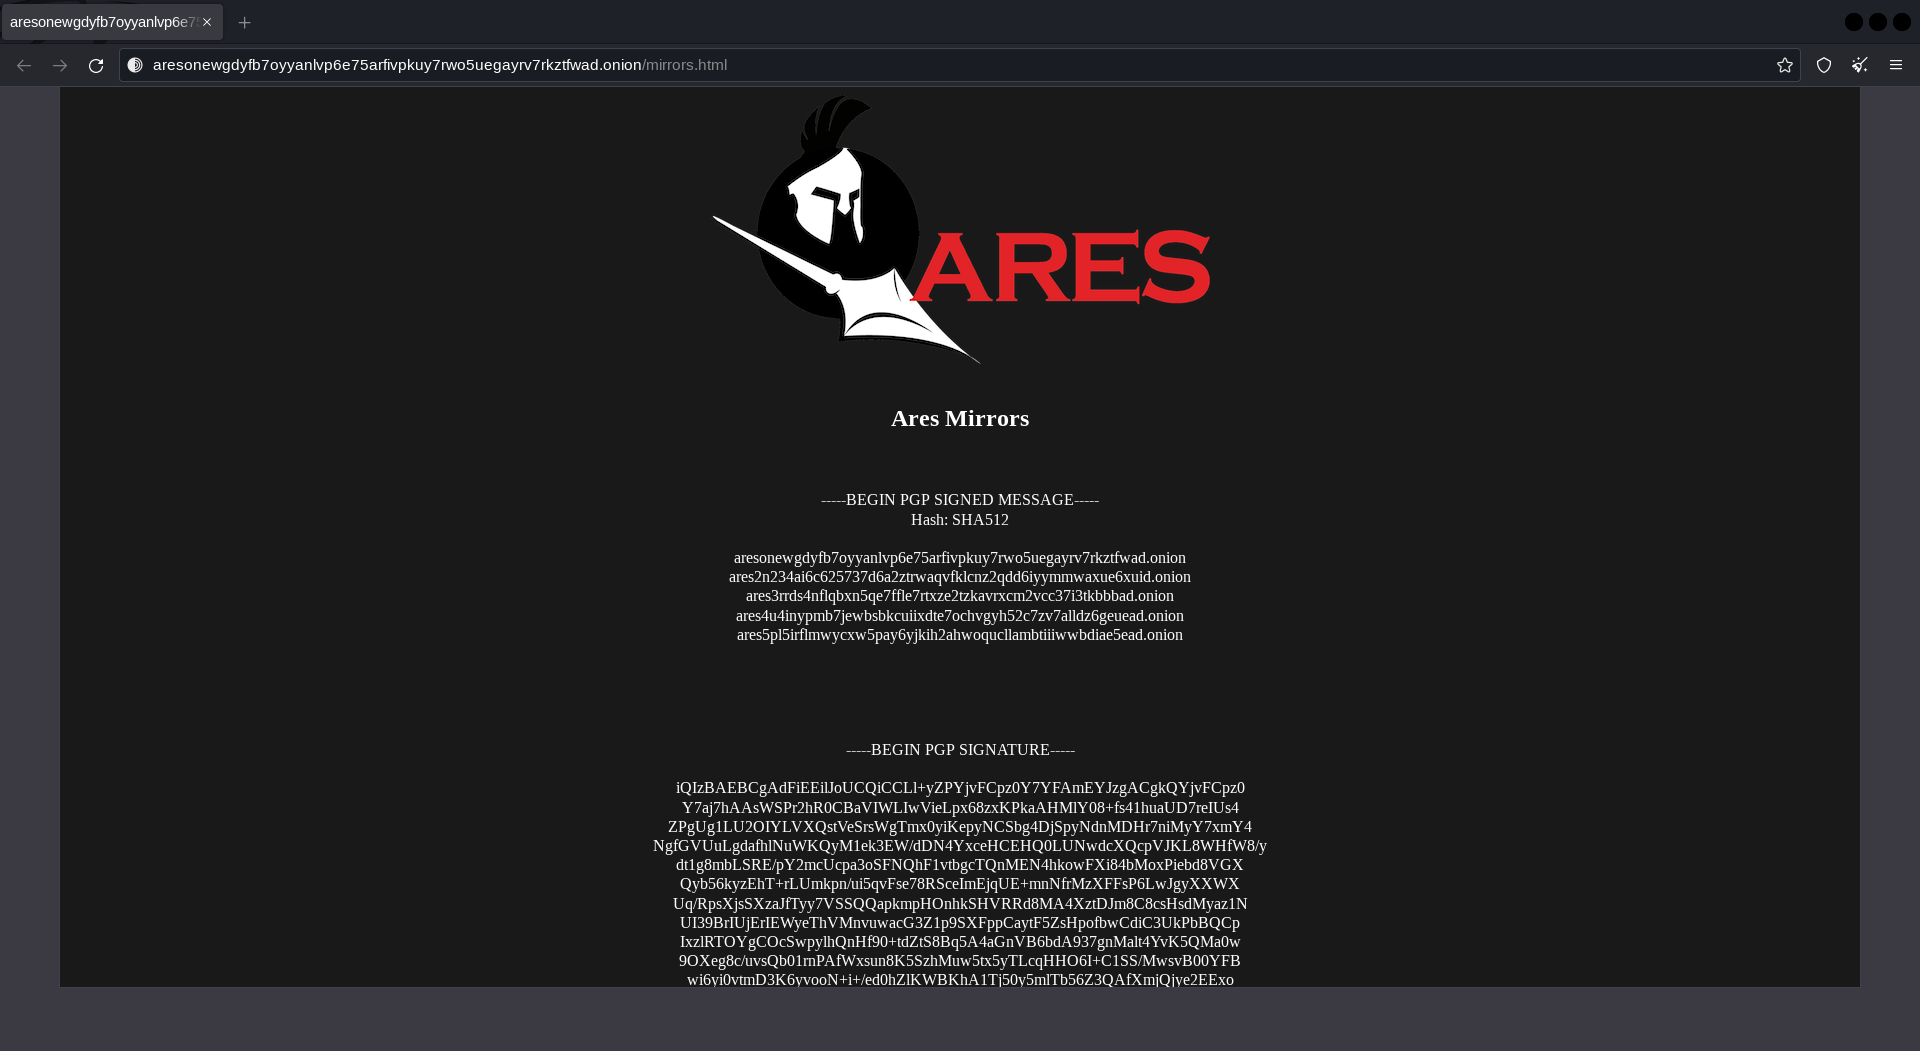 Ares darknet market structure